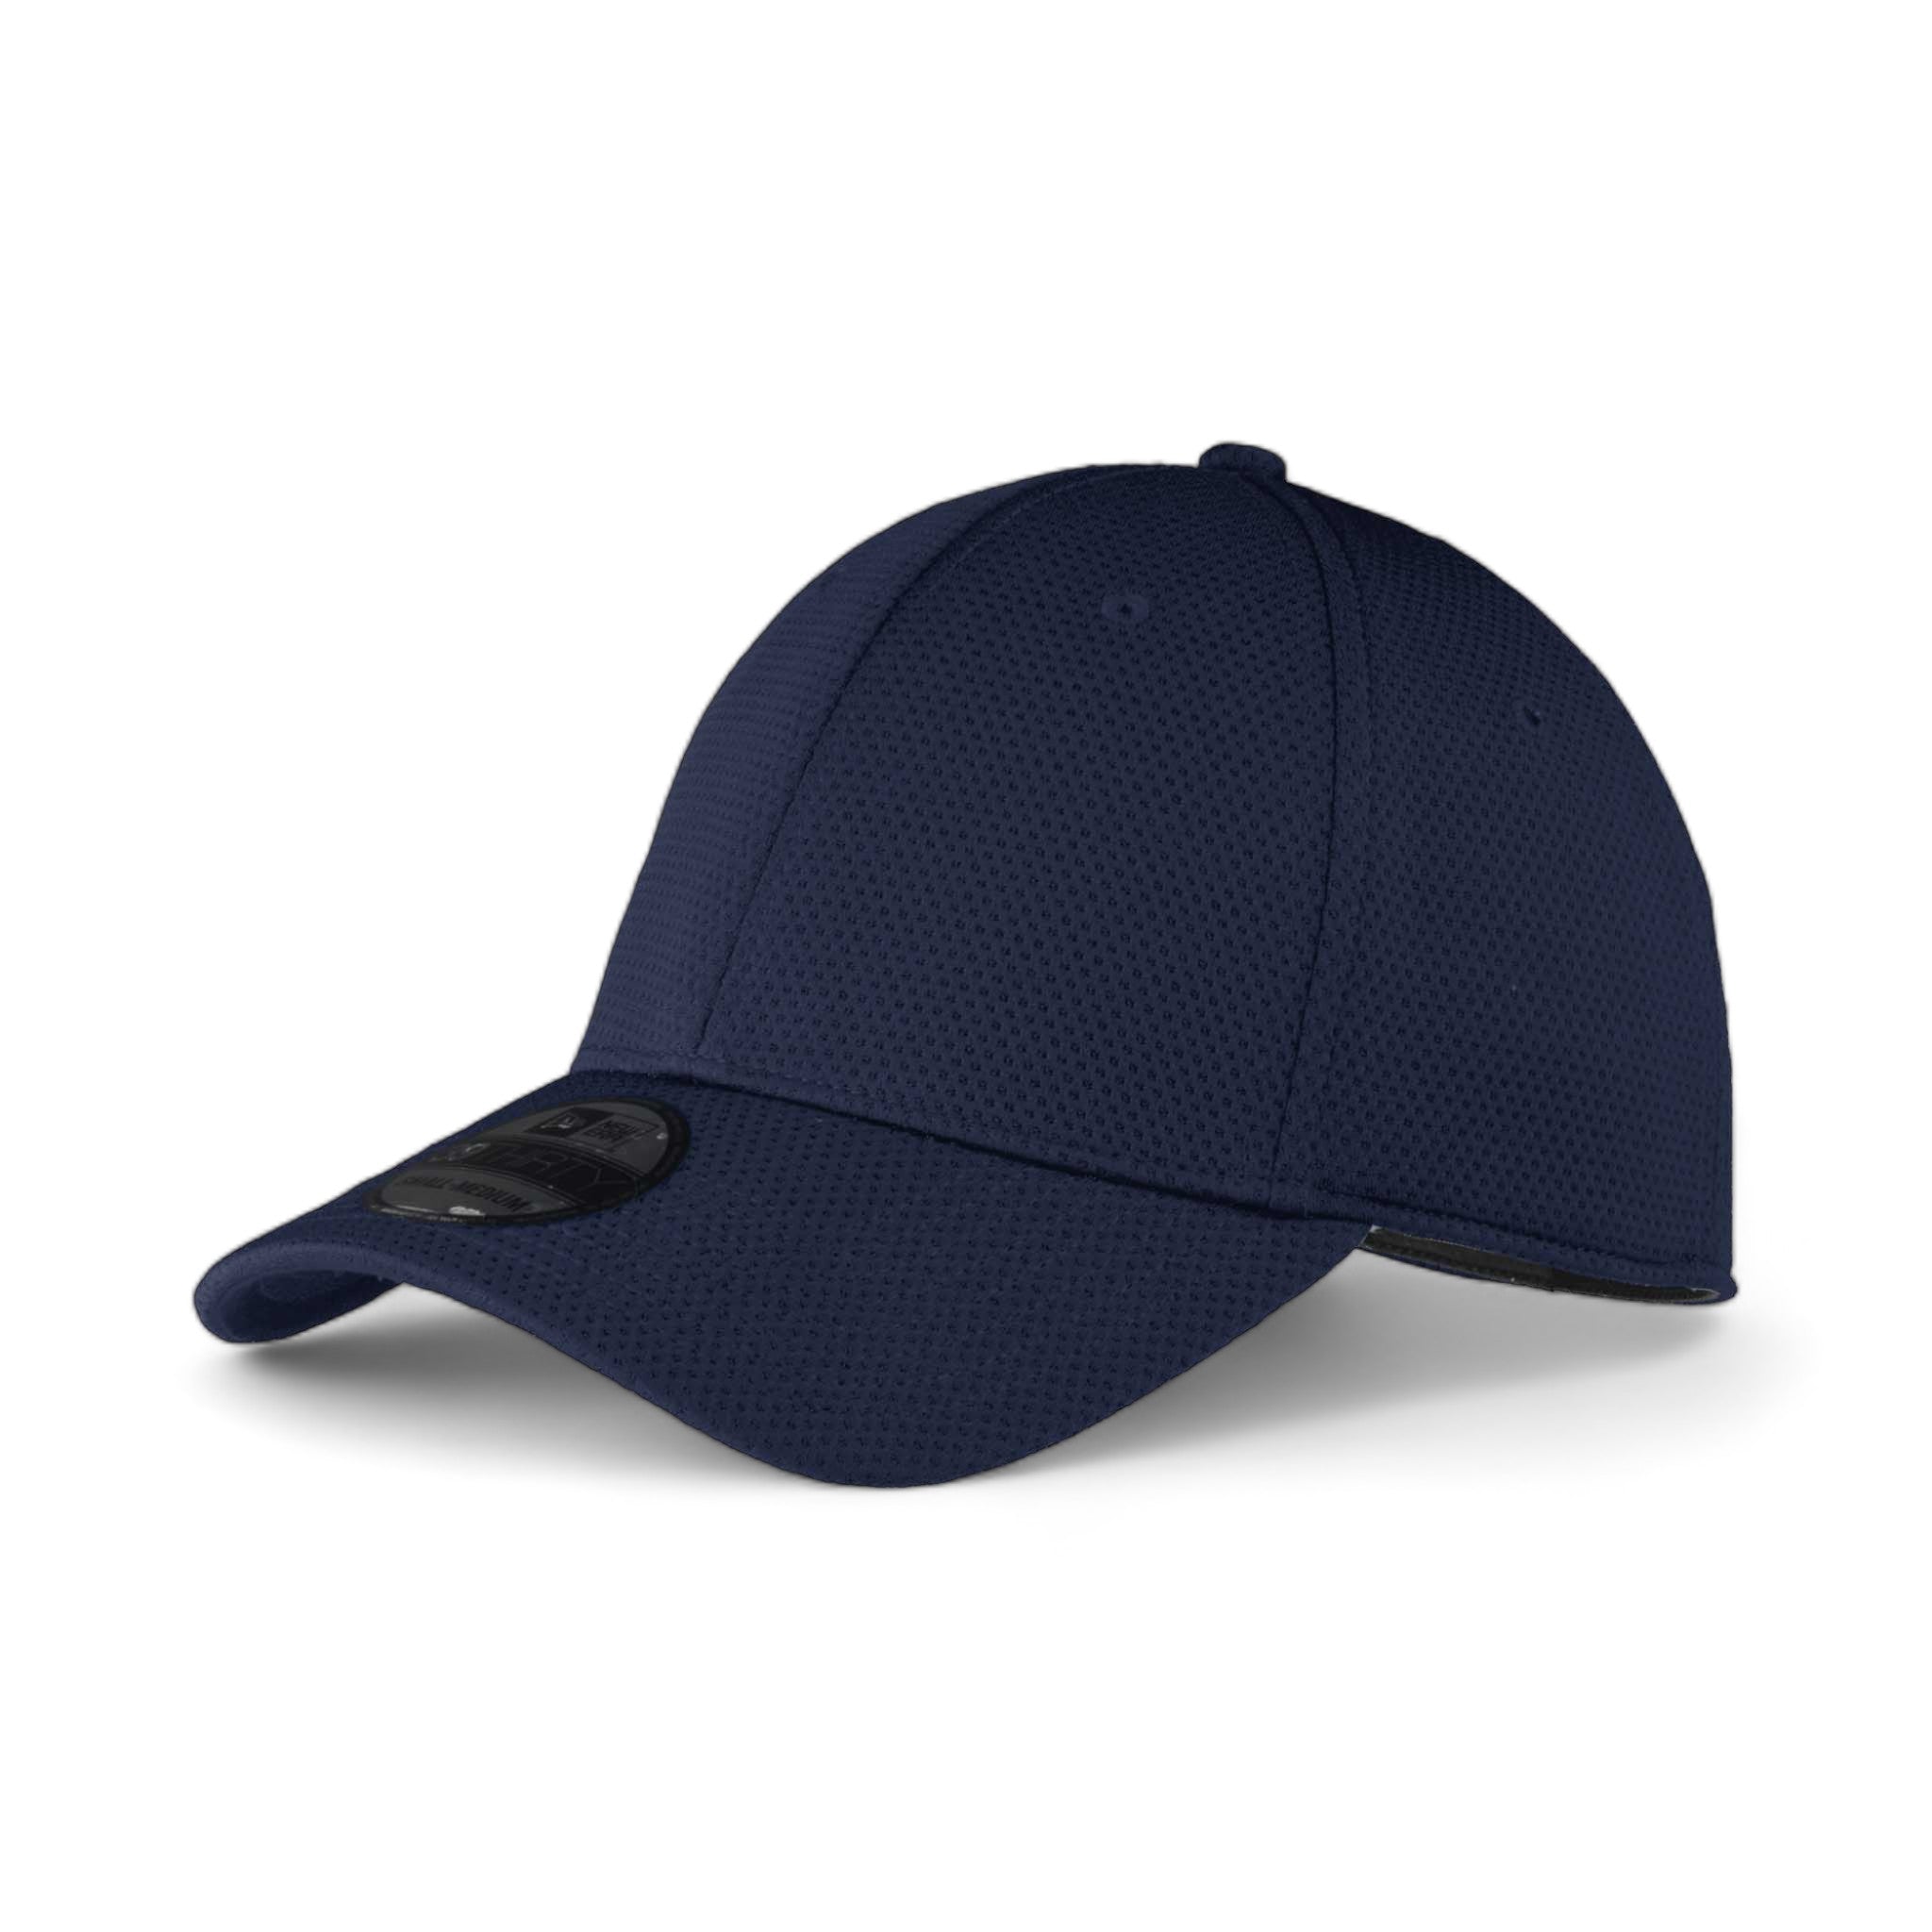 Side view of New Era NE1090 custom hat in league navy